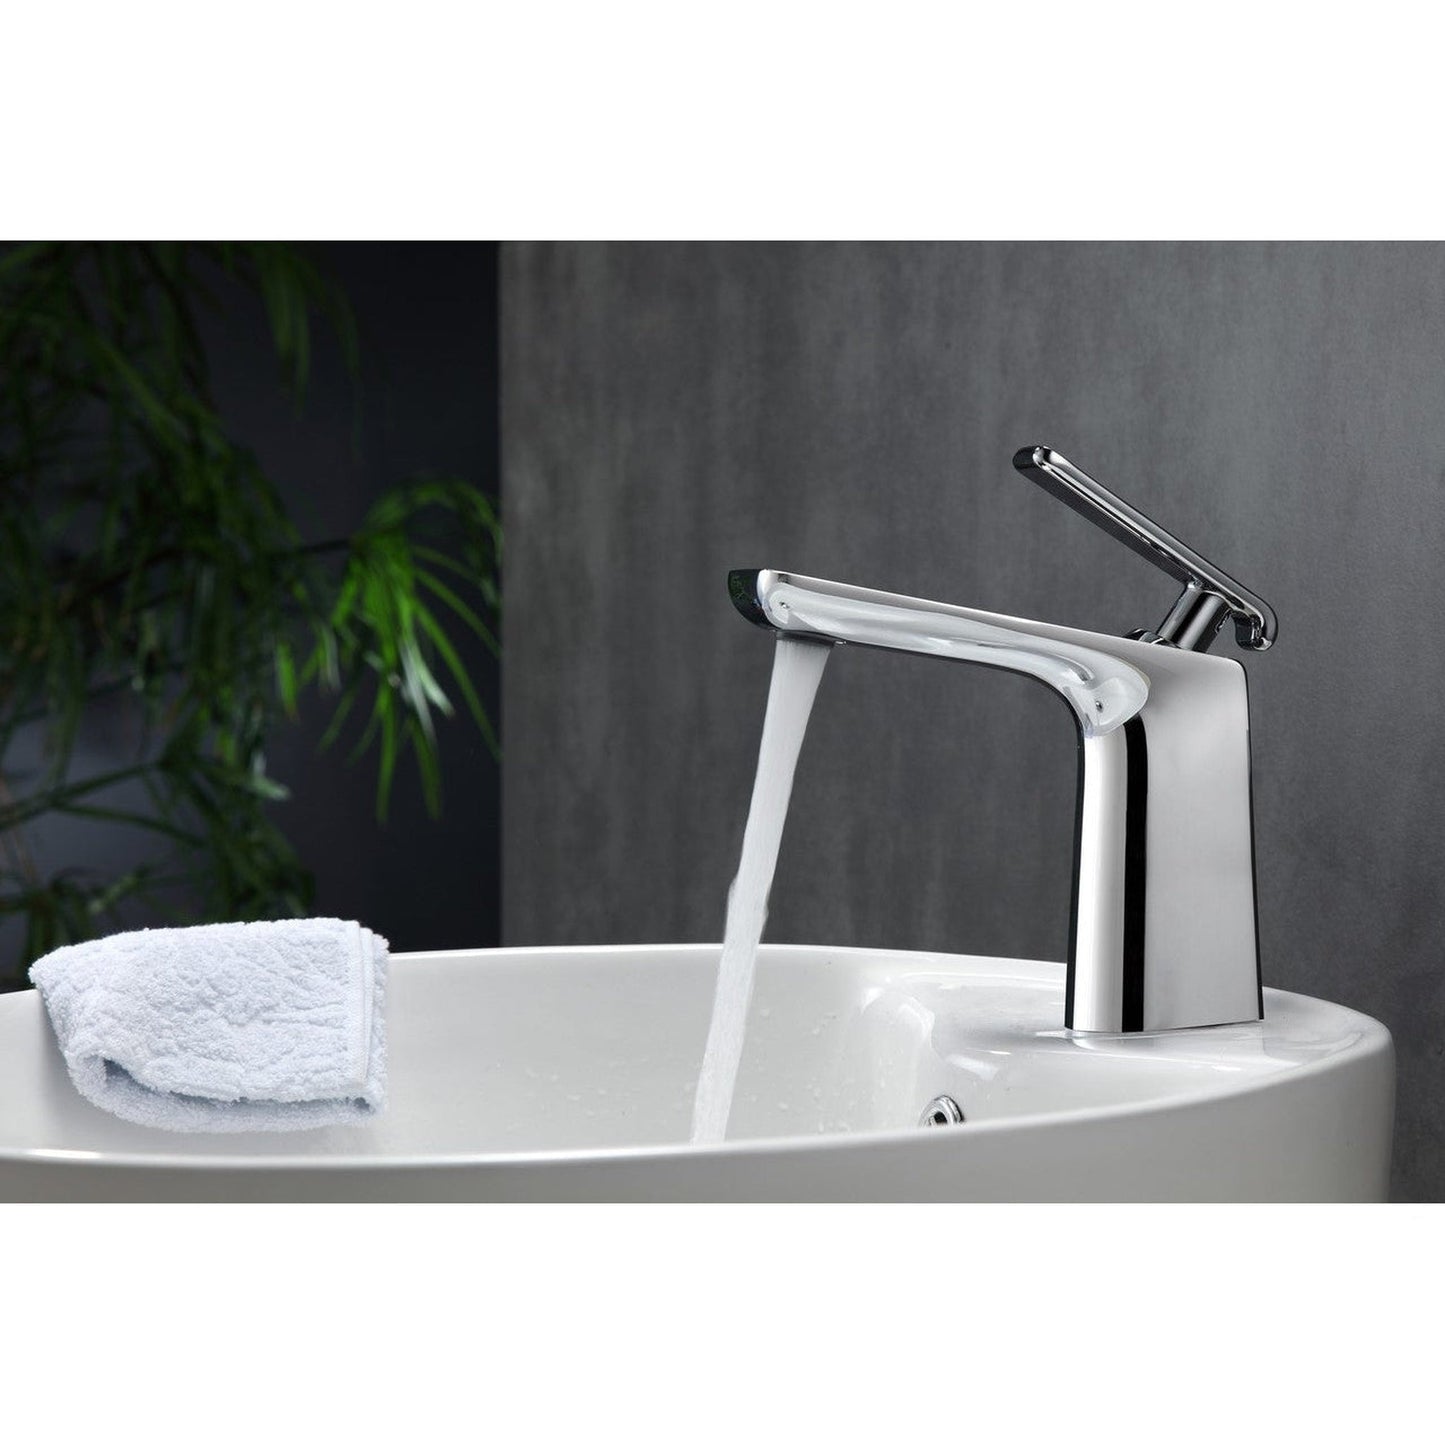 KubeBath Aqua Adatto 7" Single Hole Polished Chrome Bathroom Faucet